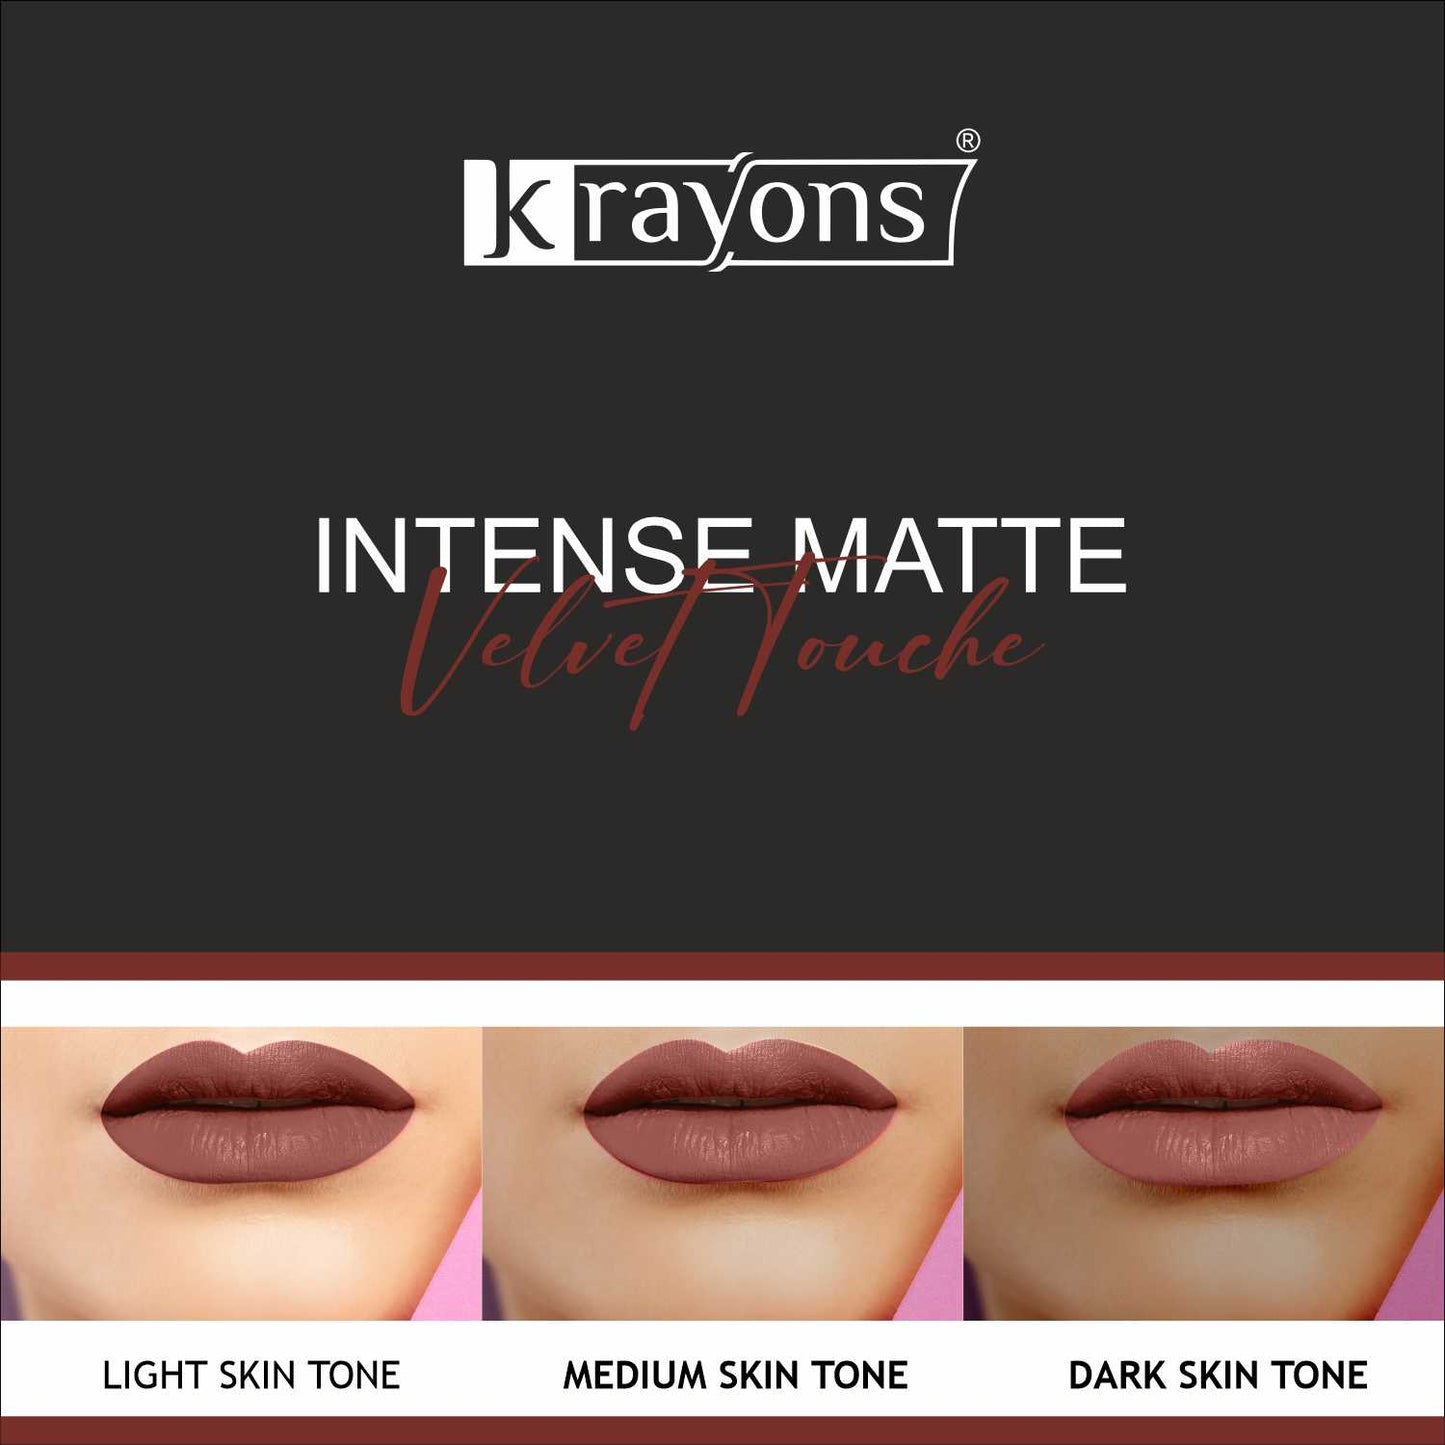 Krayons Intense Matte Lipstick, Creamy Finish, Waterproof, Longlasting, 3.5gm (Chocolate Caramel)